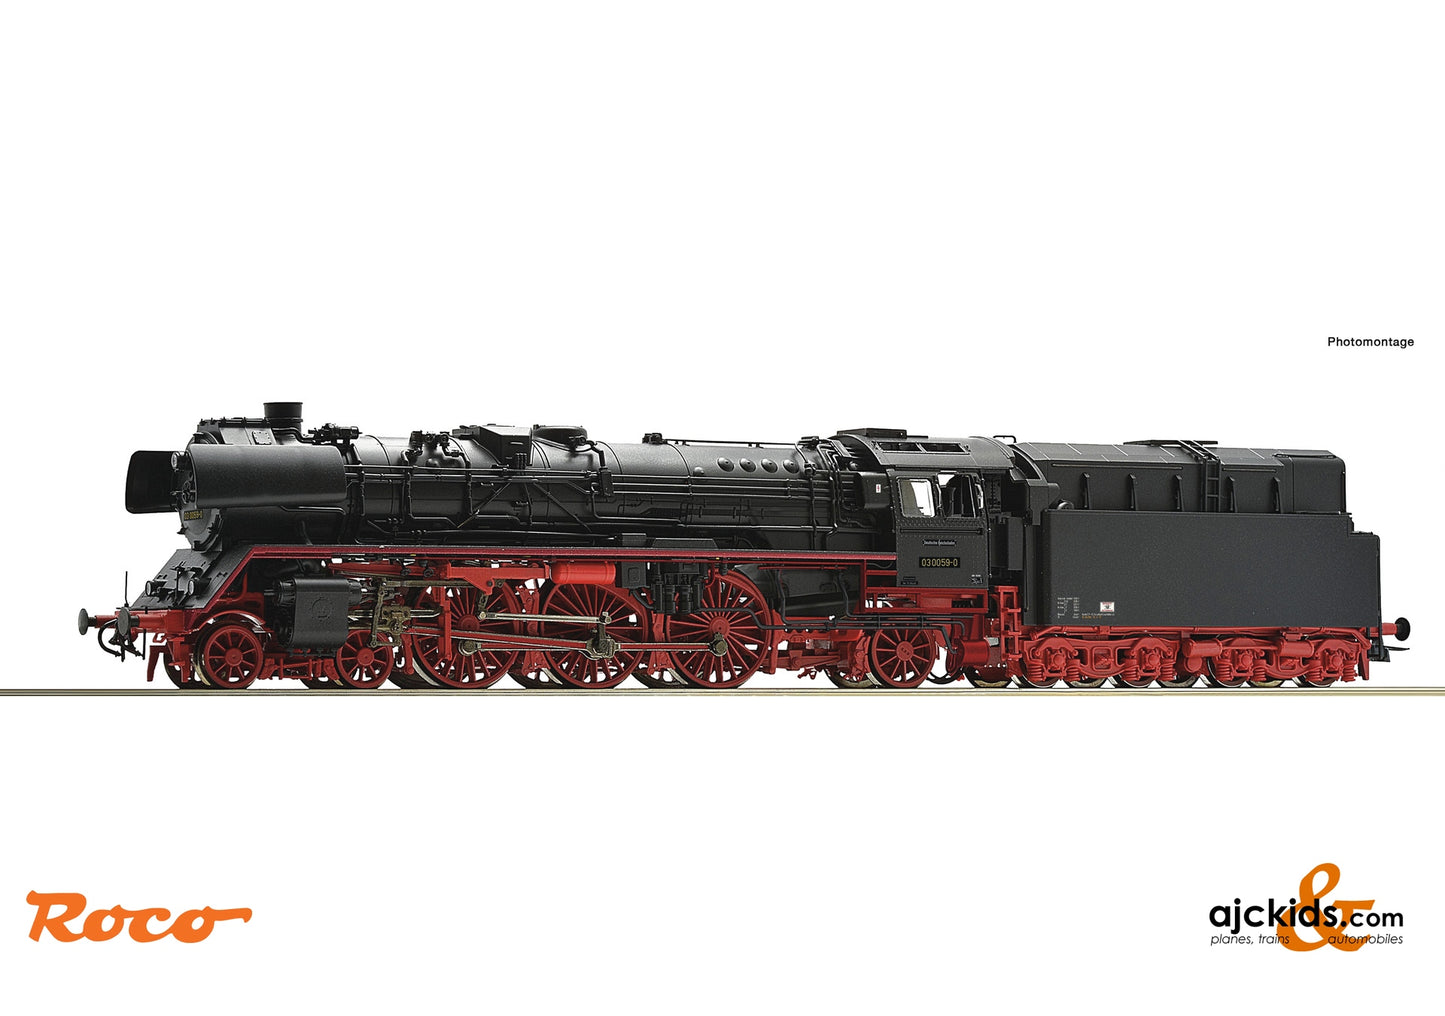 Roco 78068 - Steam locomotive 03 0059-0, DR at Ajckids.com